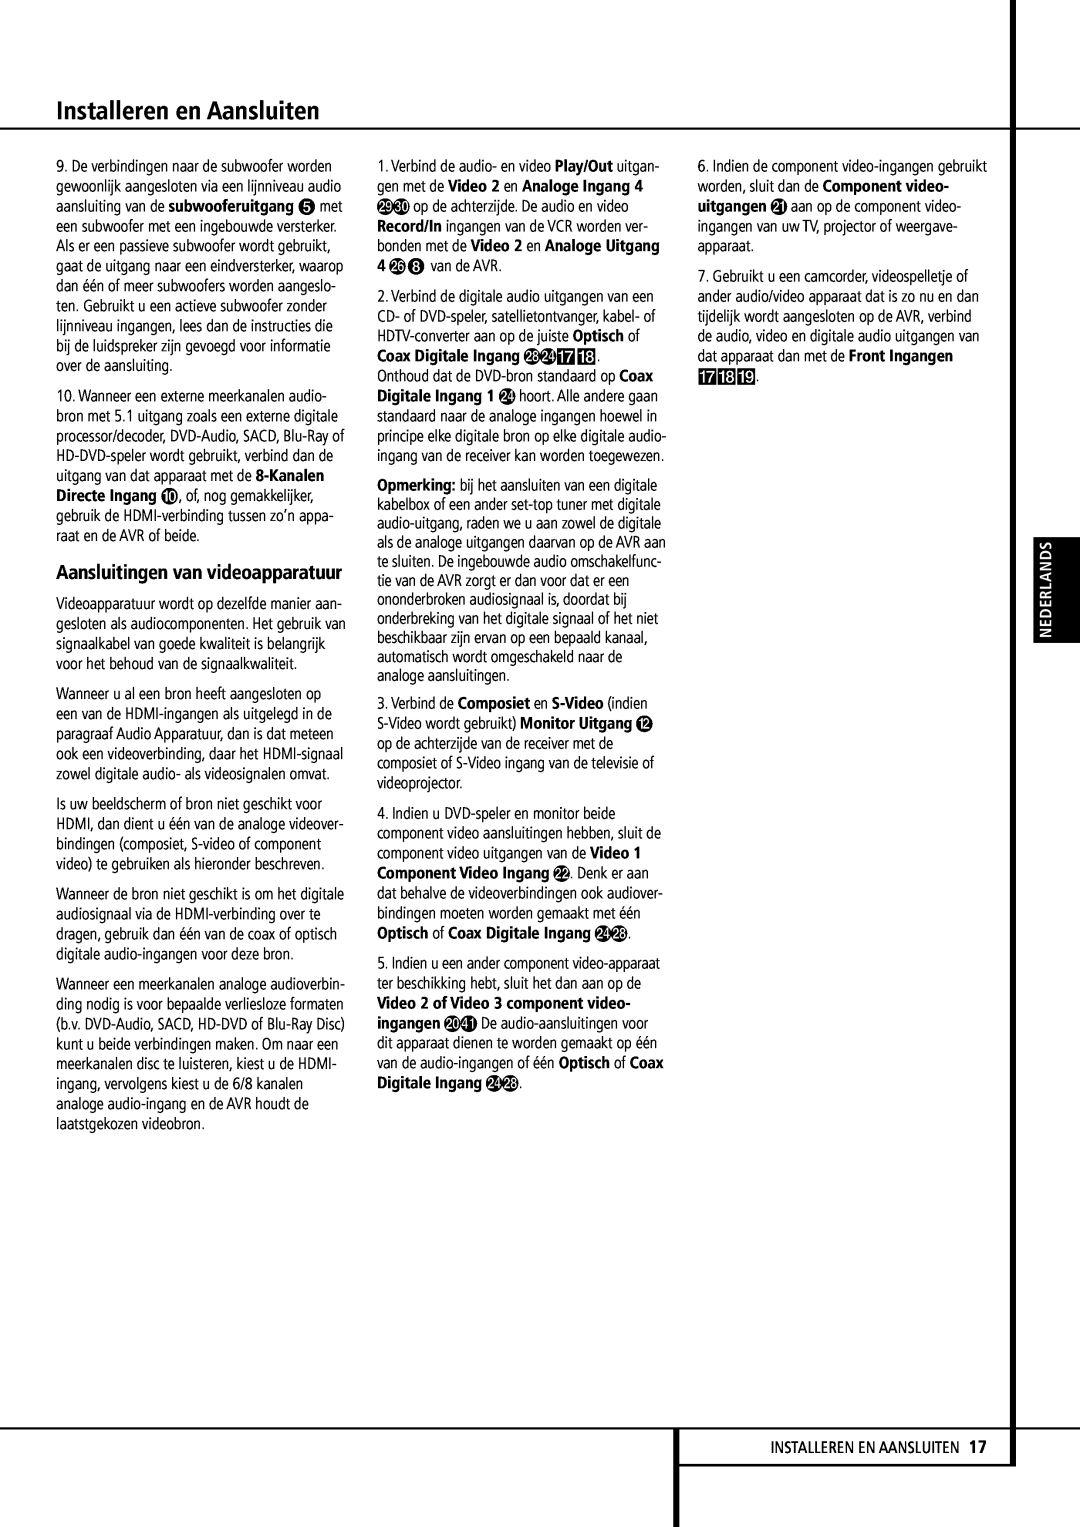 Harman-Kardon 355, 255 manual Aansluitingen van videoapparatuur, Installeren en Aansluiten, Nederlands 